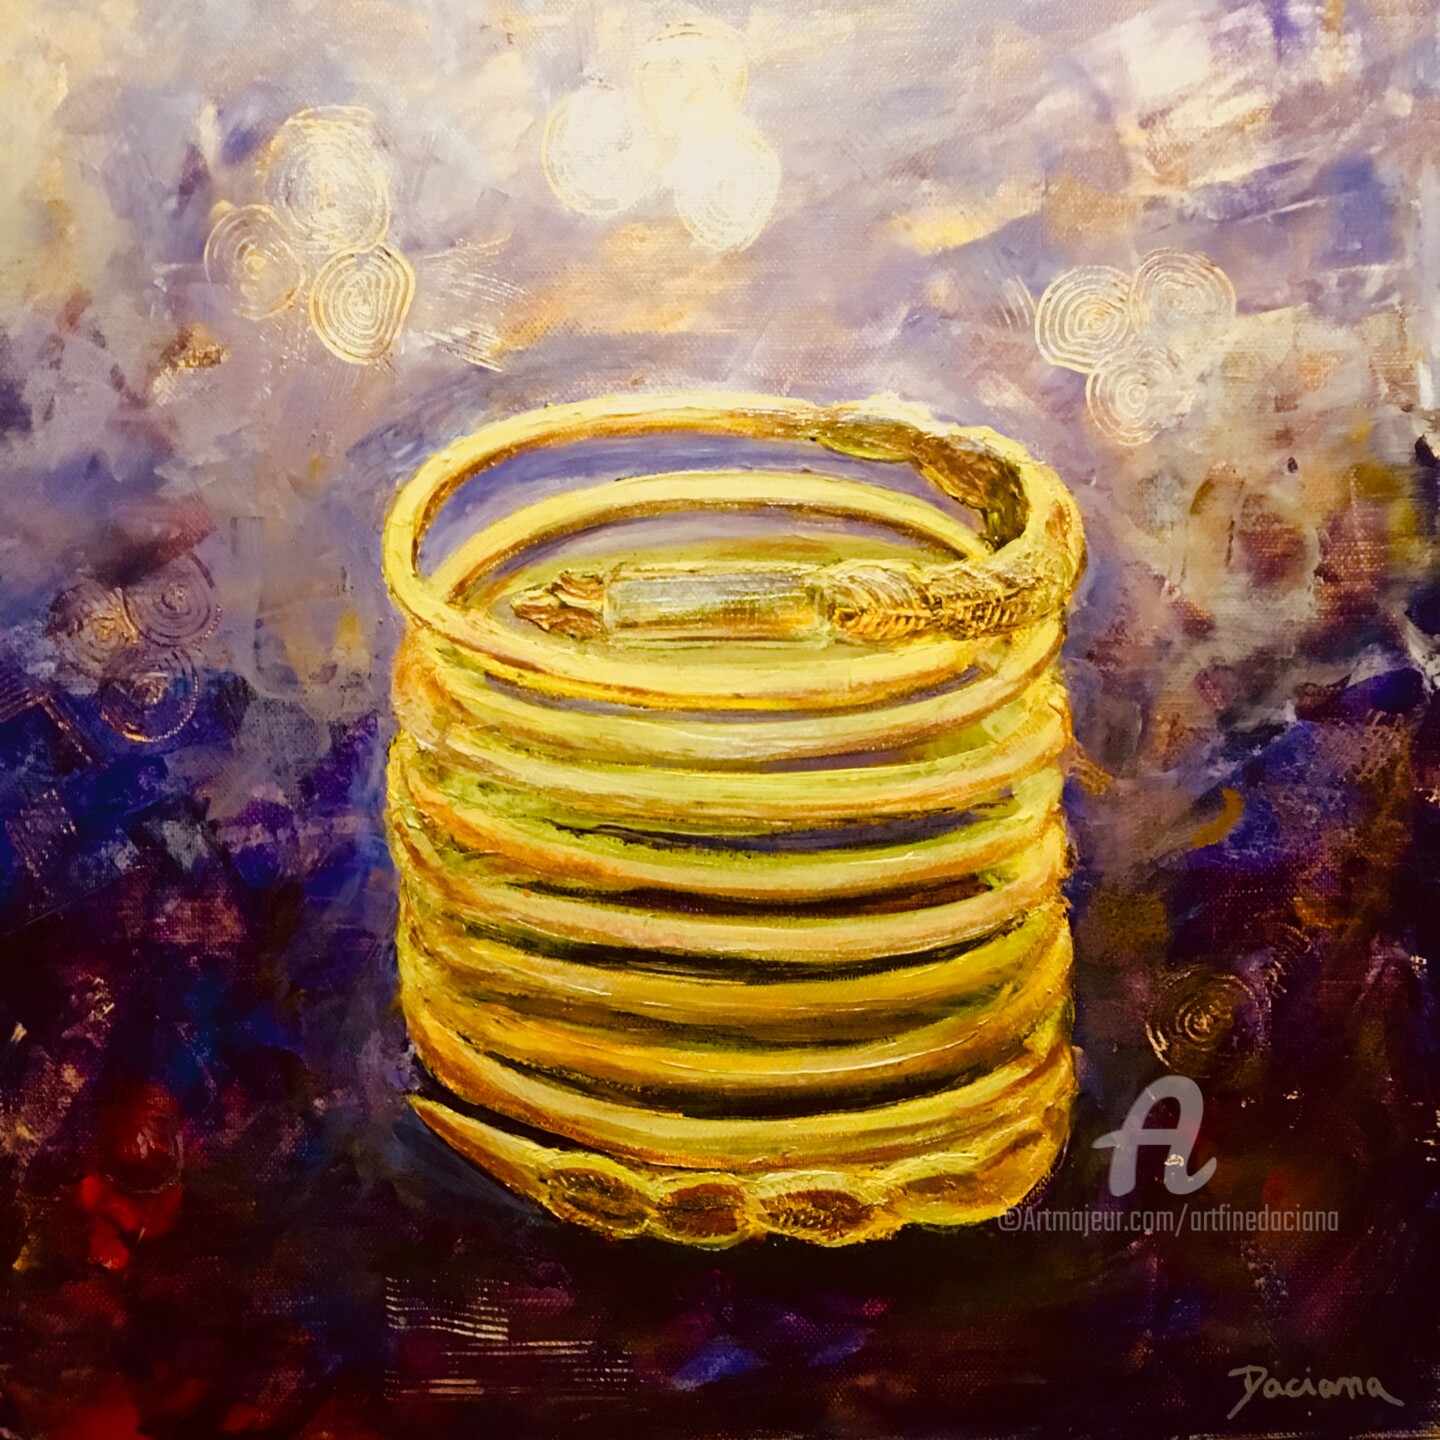 Daciana - “Dacian gold bracelet”